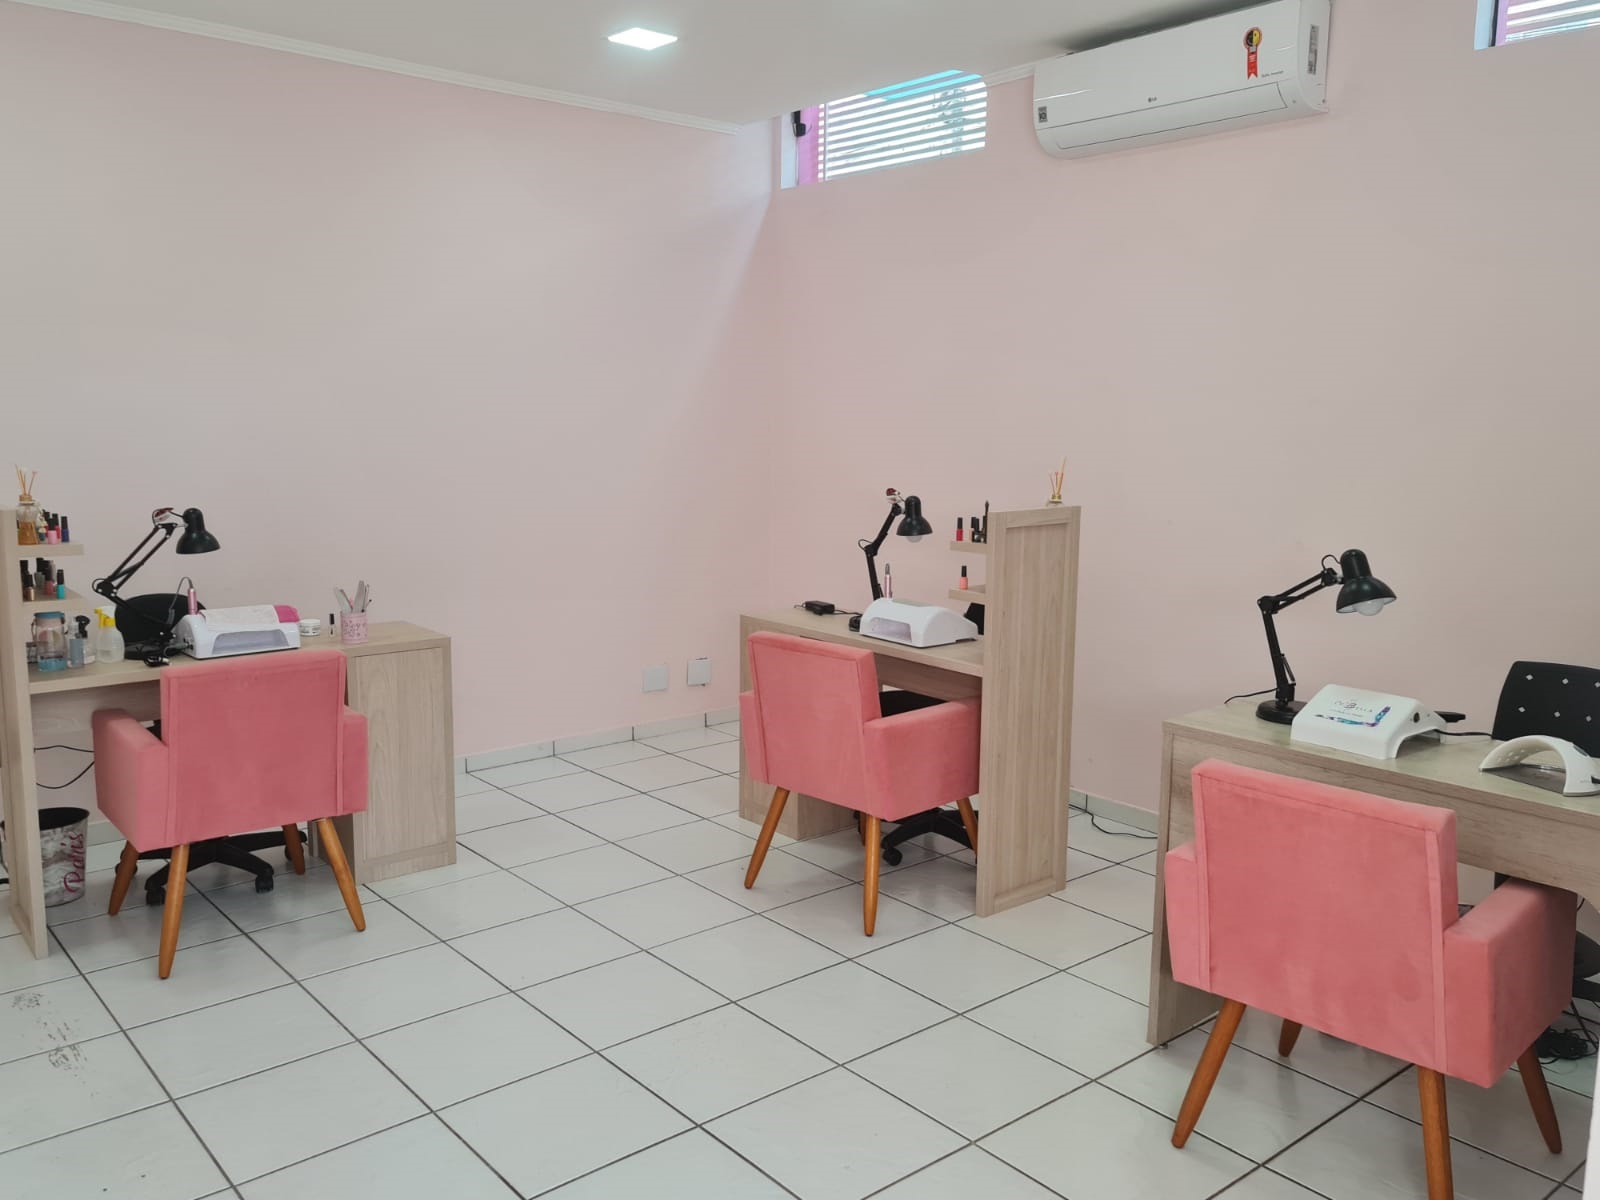 Divulgação - Local oferece serviços de manicure e pedicure sem horário marcado - Foto: Divulgação